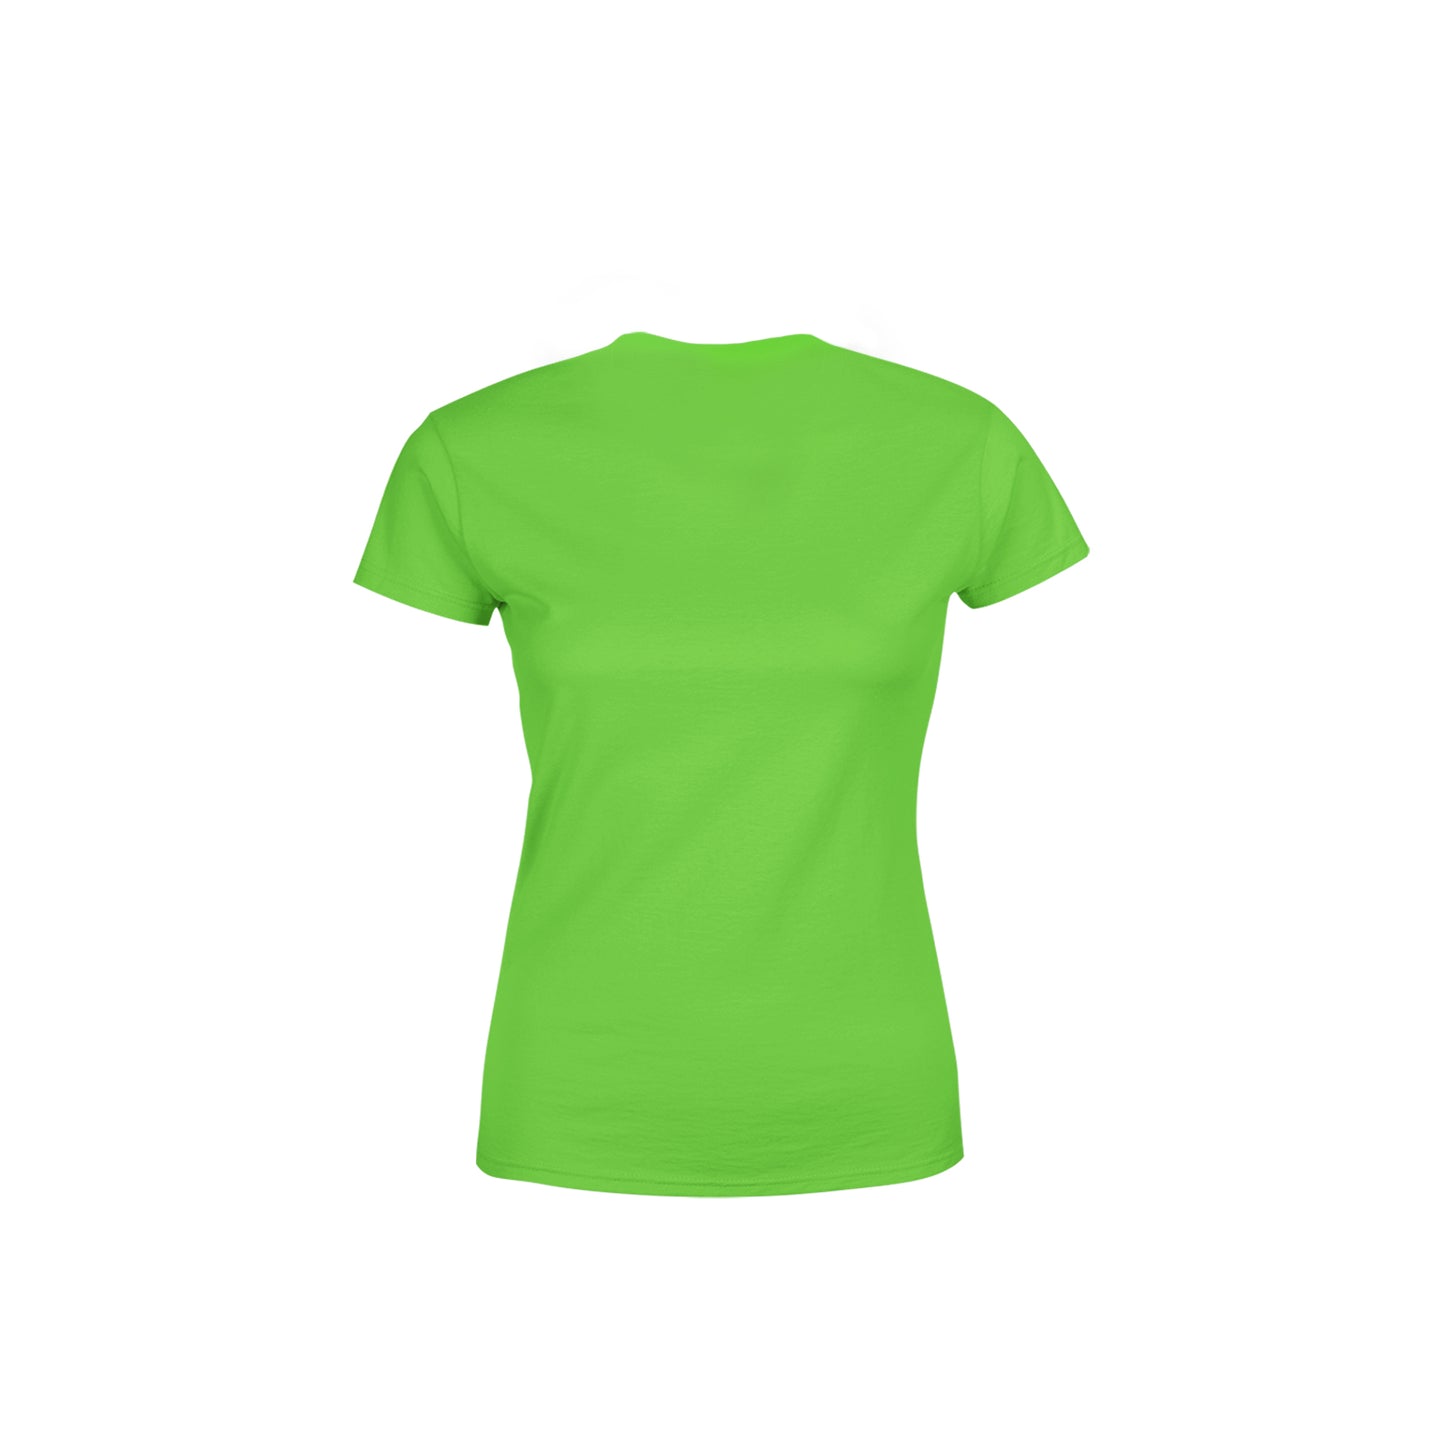 66 Number Women's T-Shirt (Liril Green)